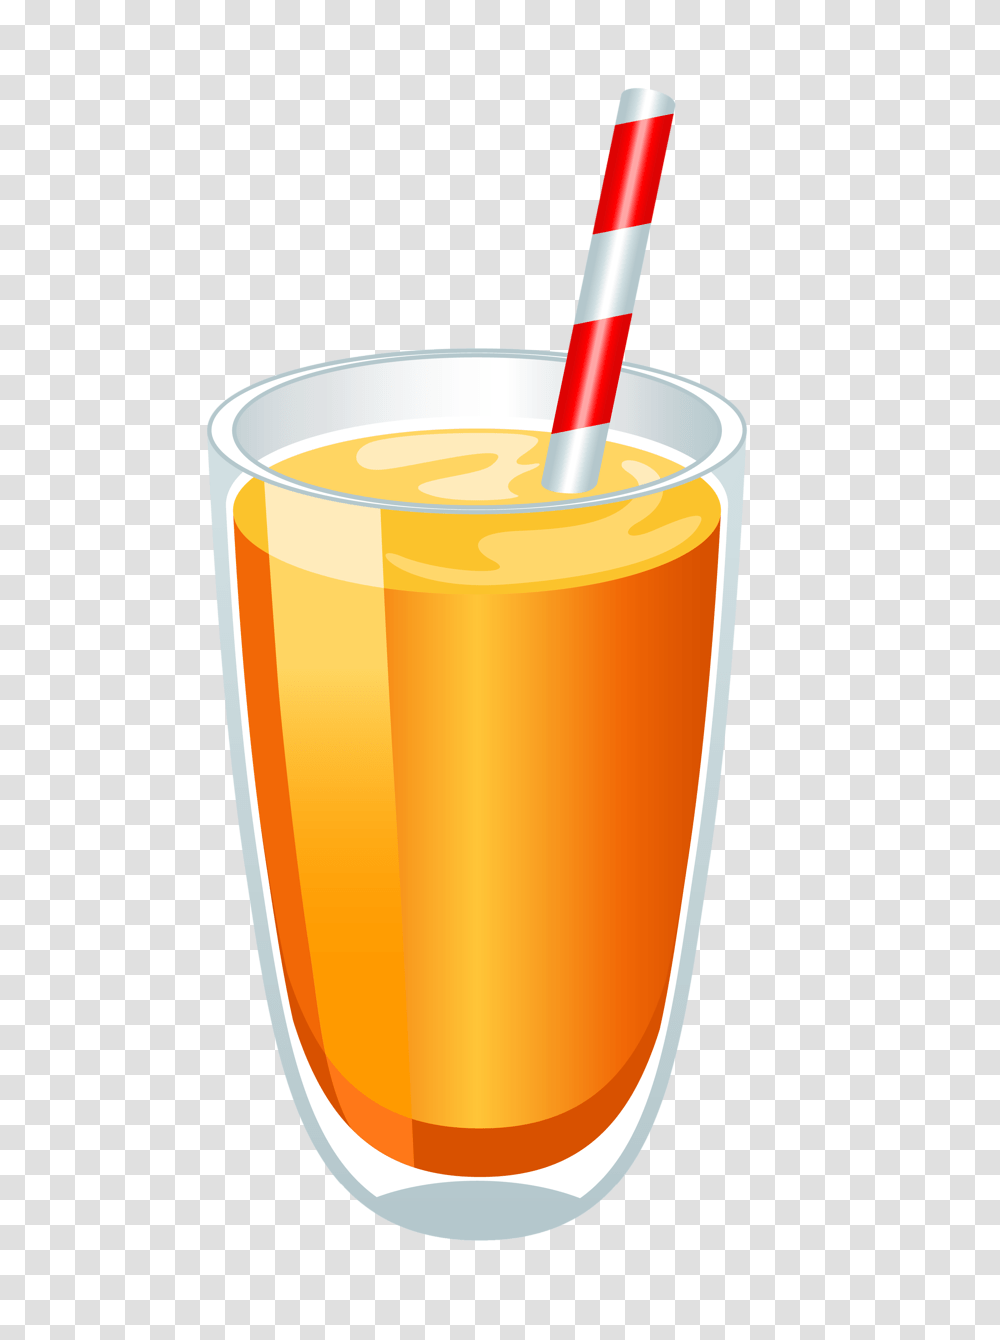 Super Bowl Logo Image, Juice, Beverage, Drink, Orange Juice Transparent Png